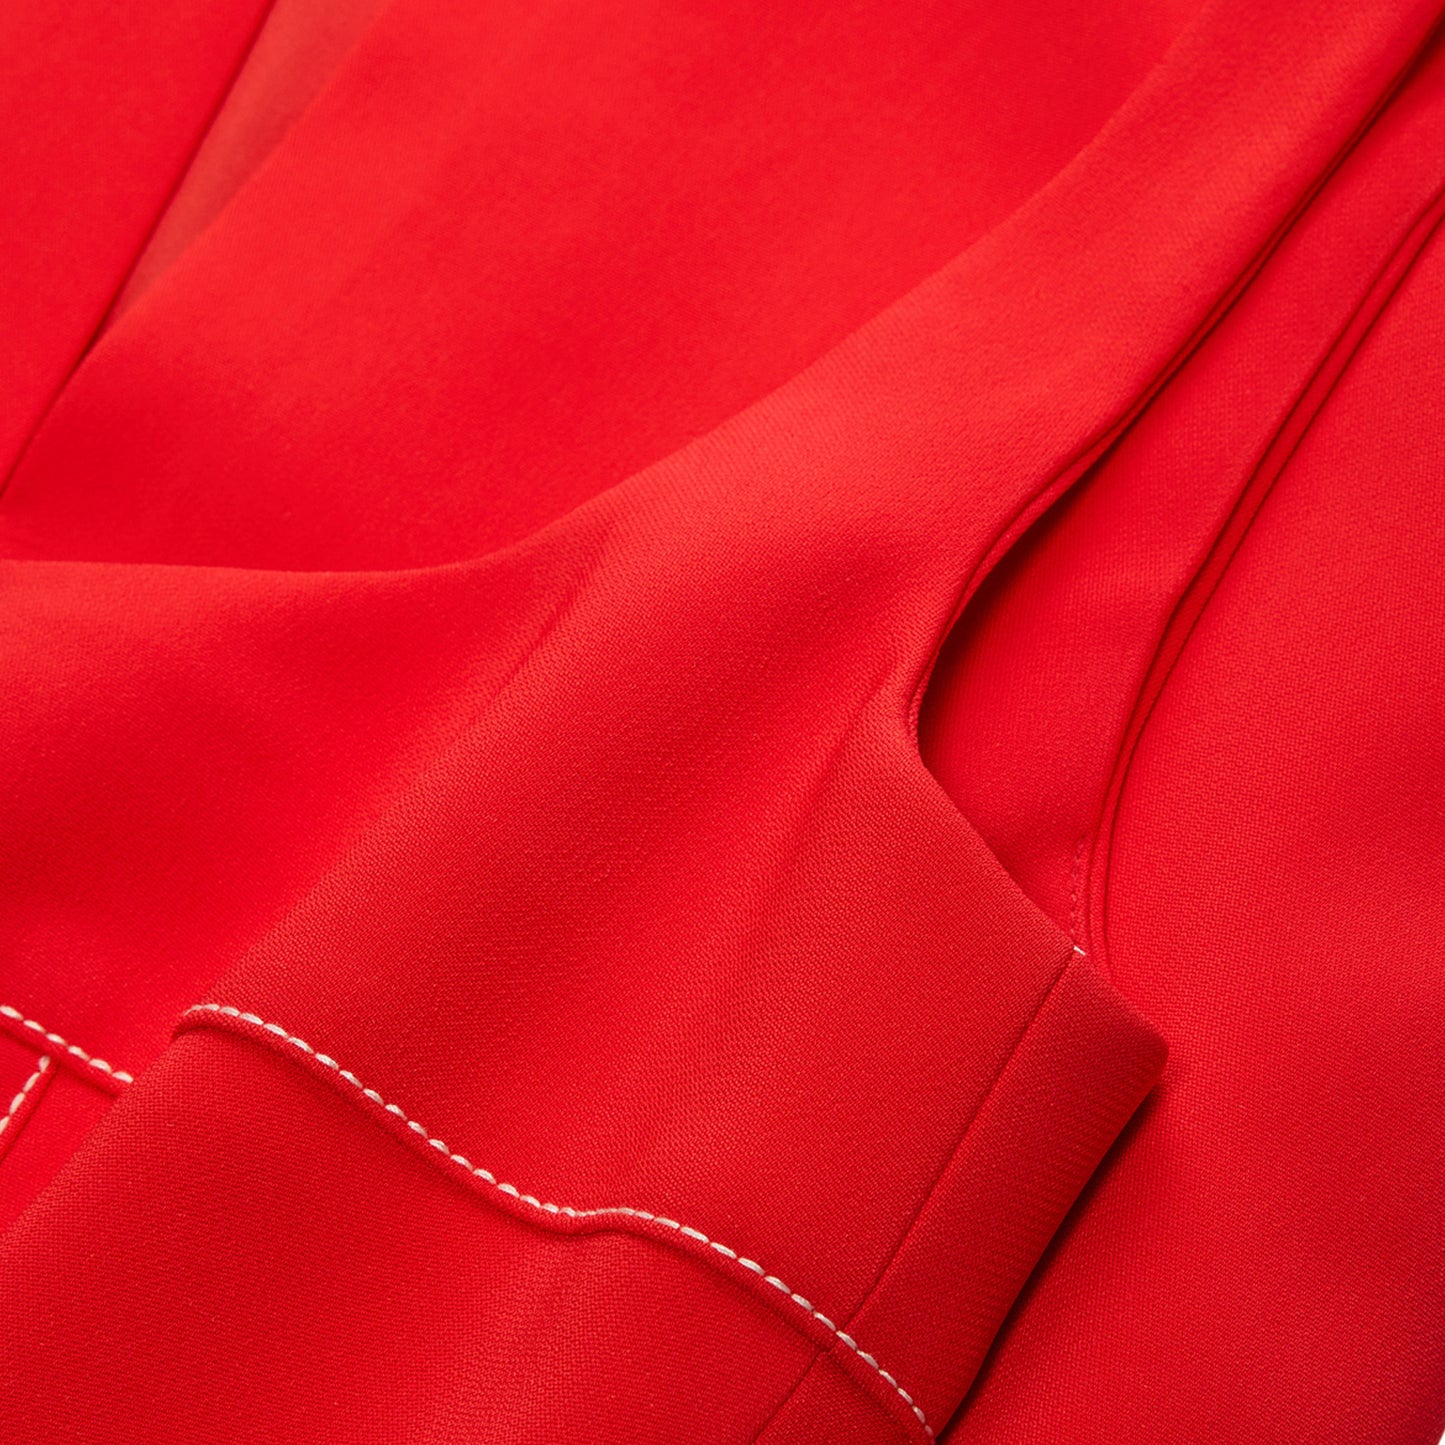 Marni Cady Sheath Dress (Red)